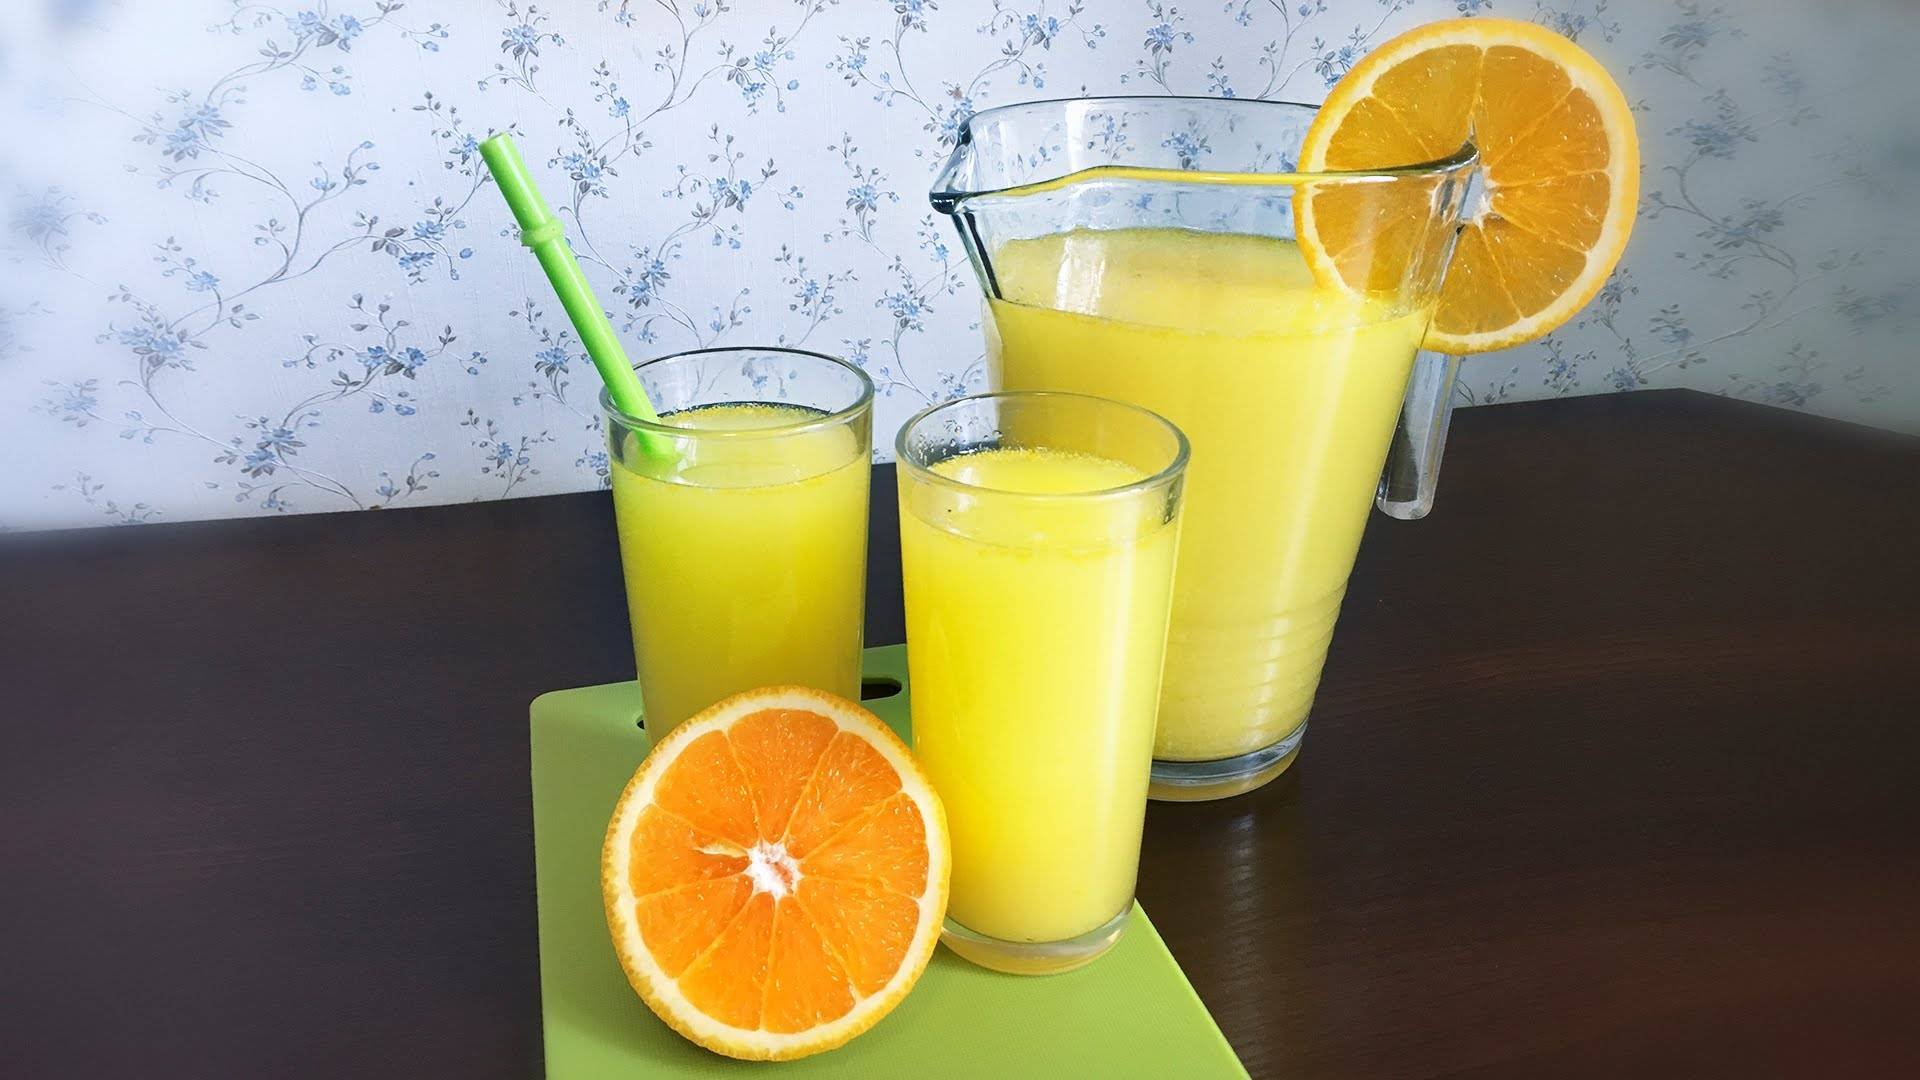 Как делать домашний лимонад. Лимонад цитрус. Lemonade 1:1. Лимонад домашний апельсин и лимон. Апельсины и апельсиновый сок.